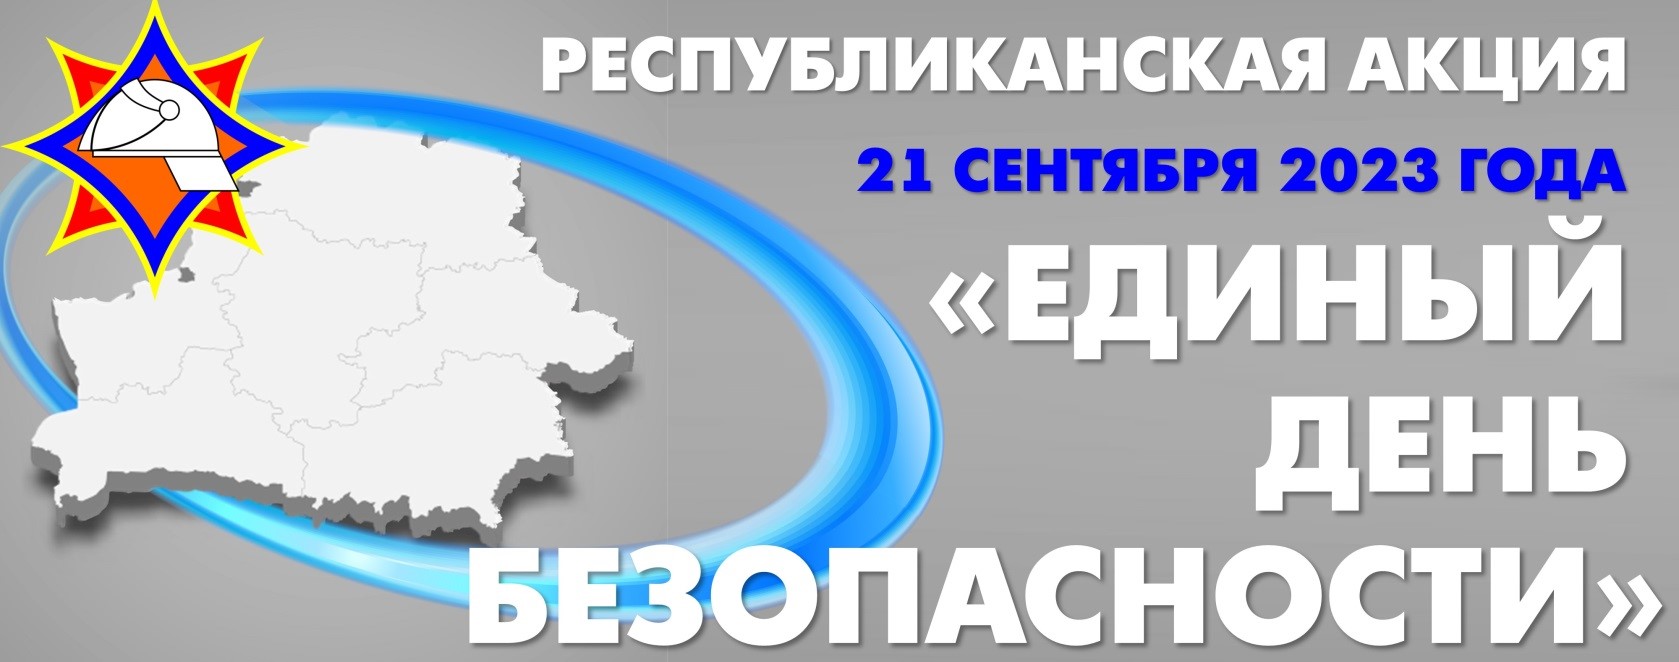 21 сентября 2023 года в Беларуси пройдет Единый день безопасности